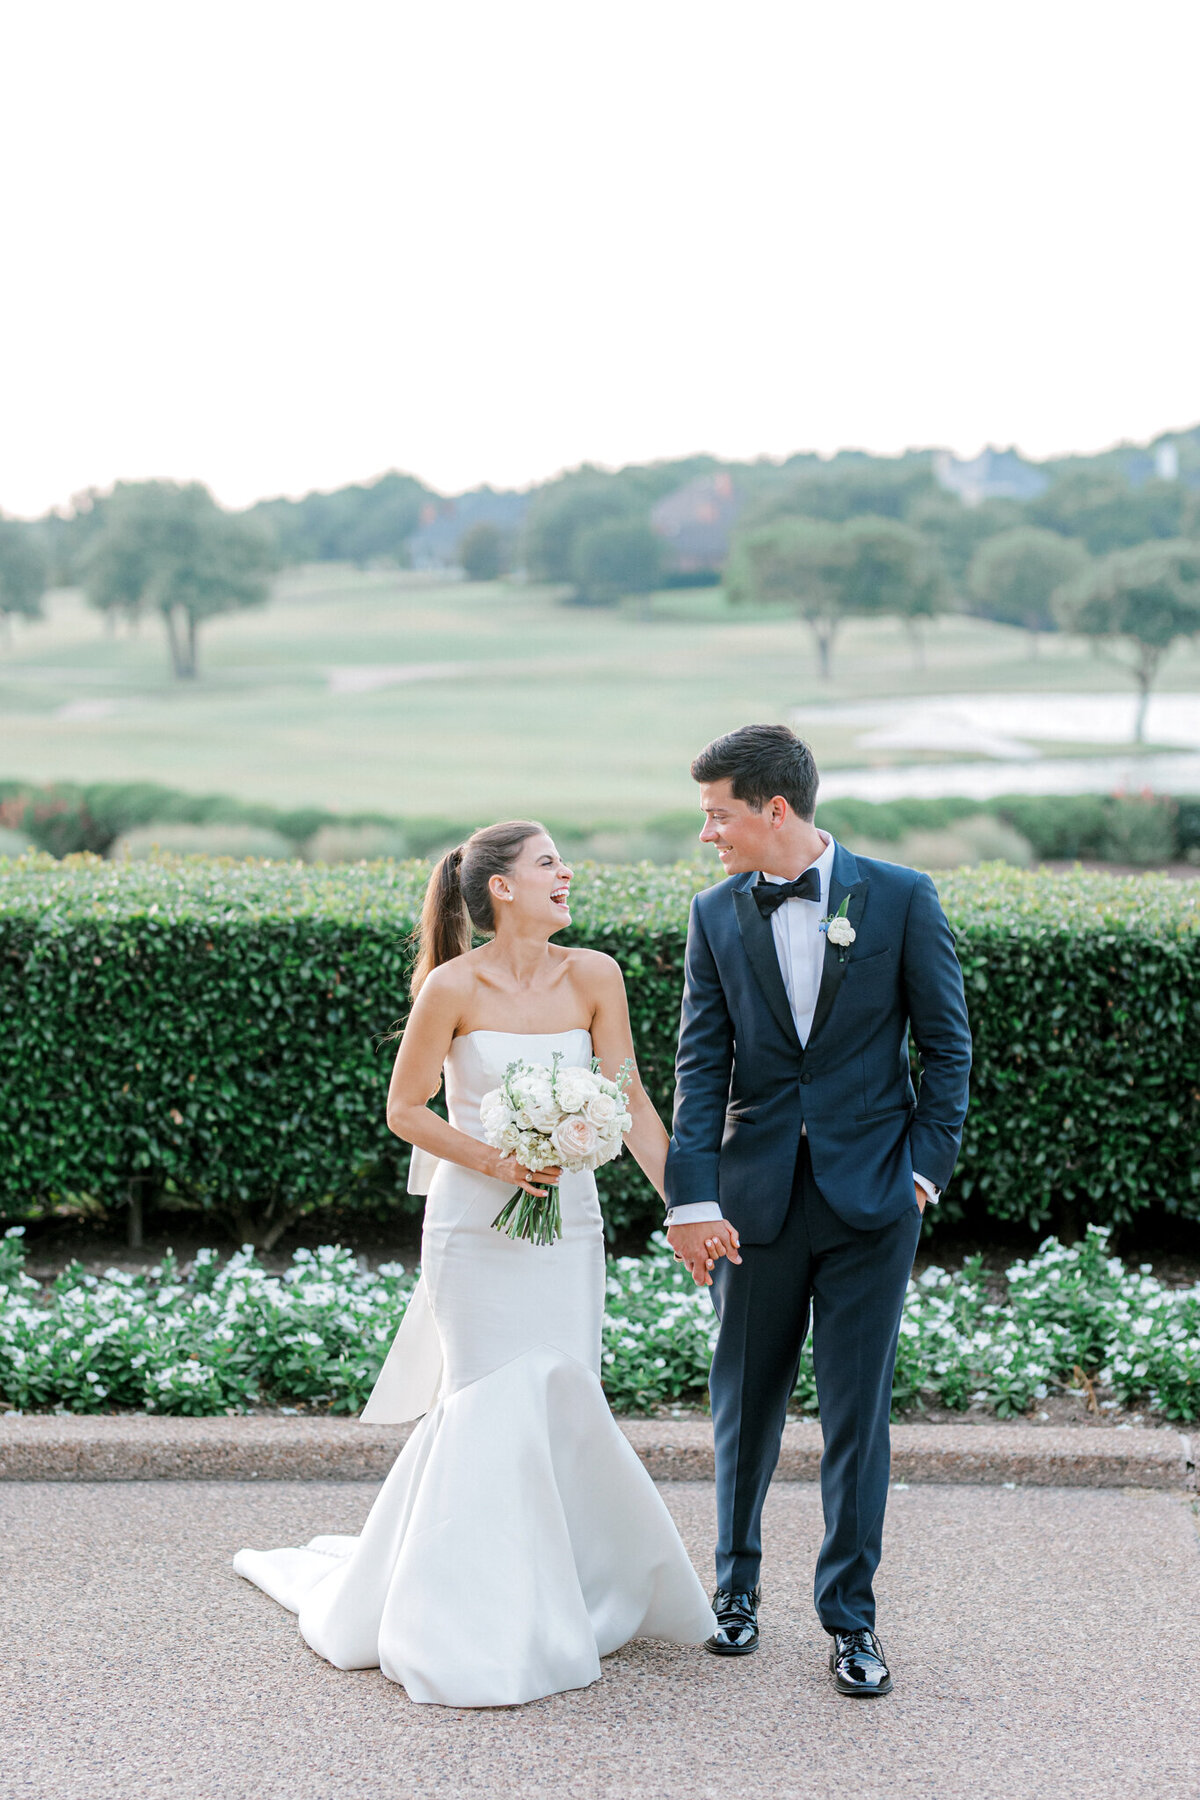 Annie & Logan's Wedding | Dallas Wedding Photographer | Sami Kathryn Photography-222